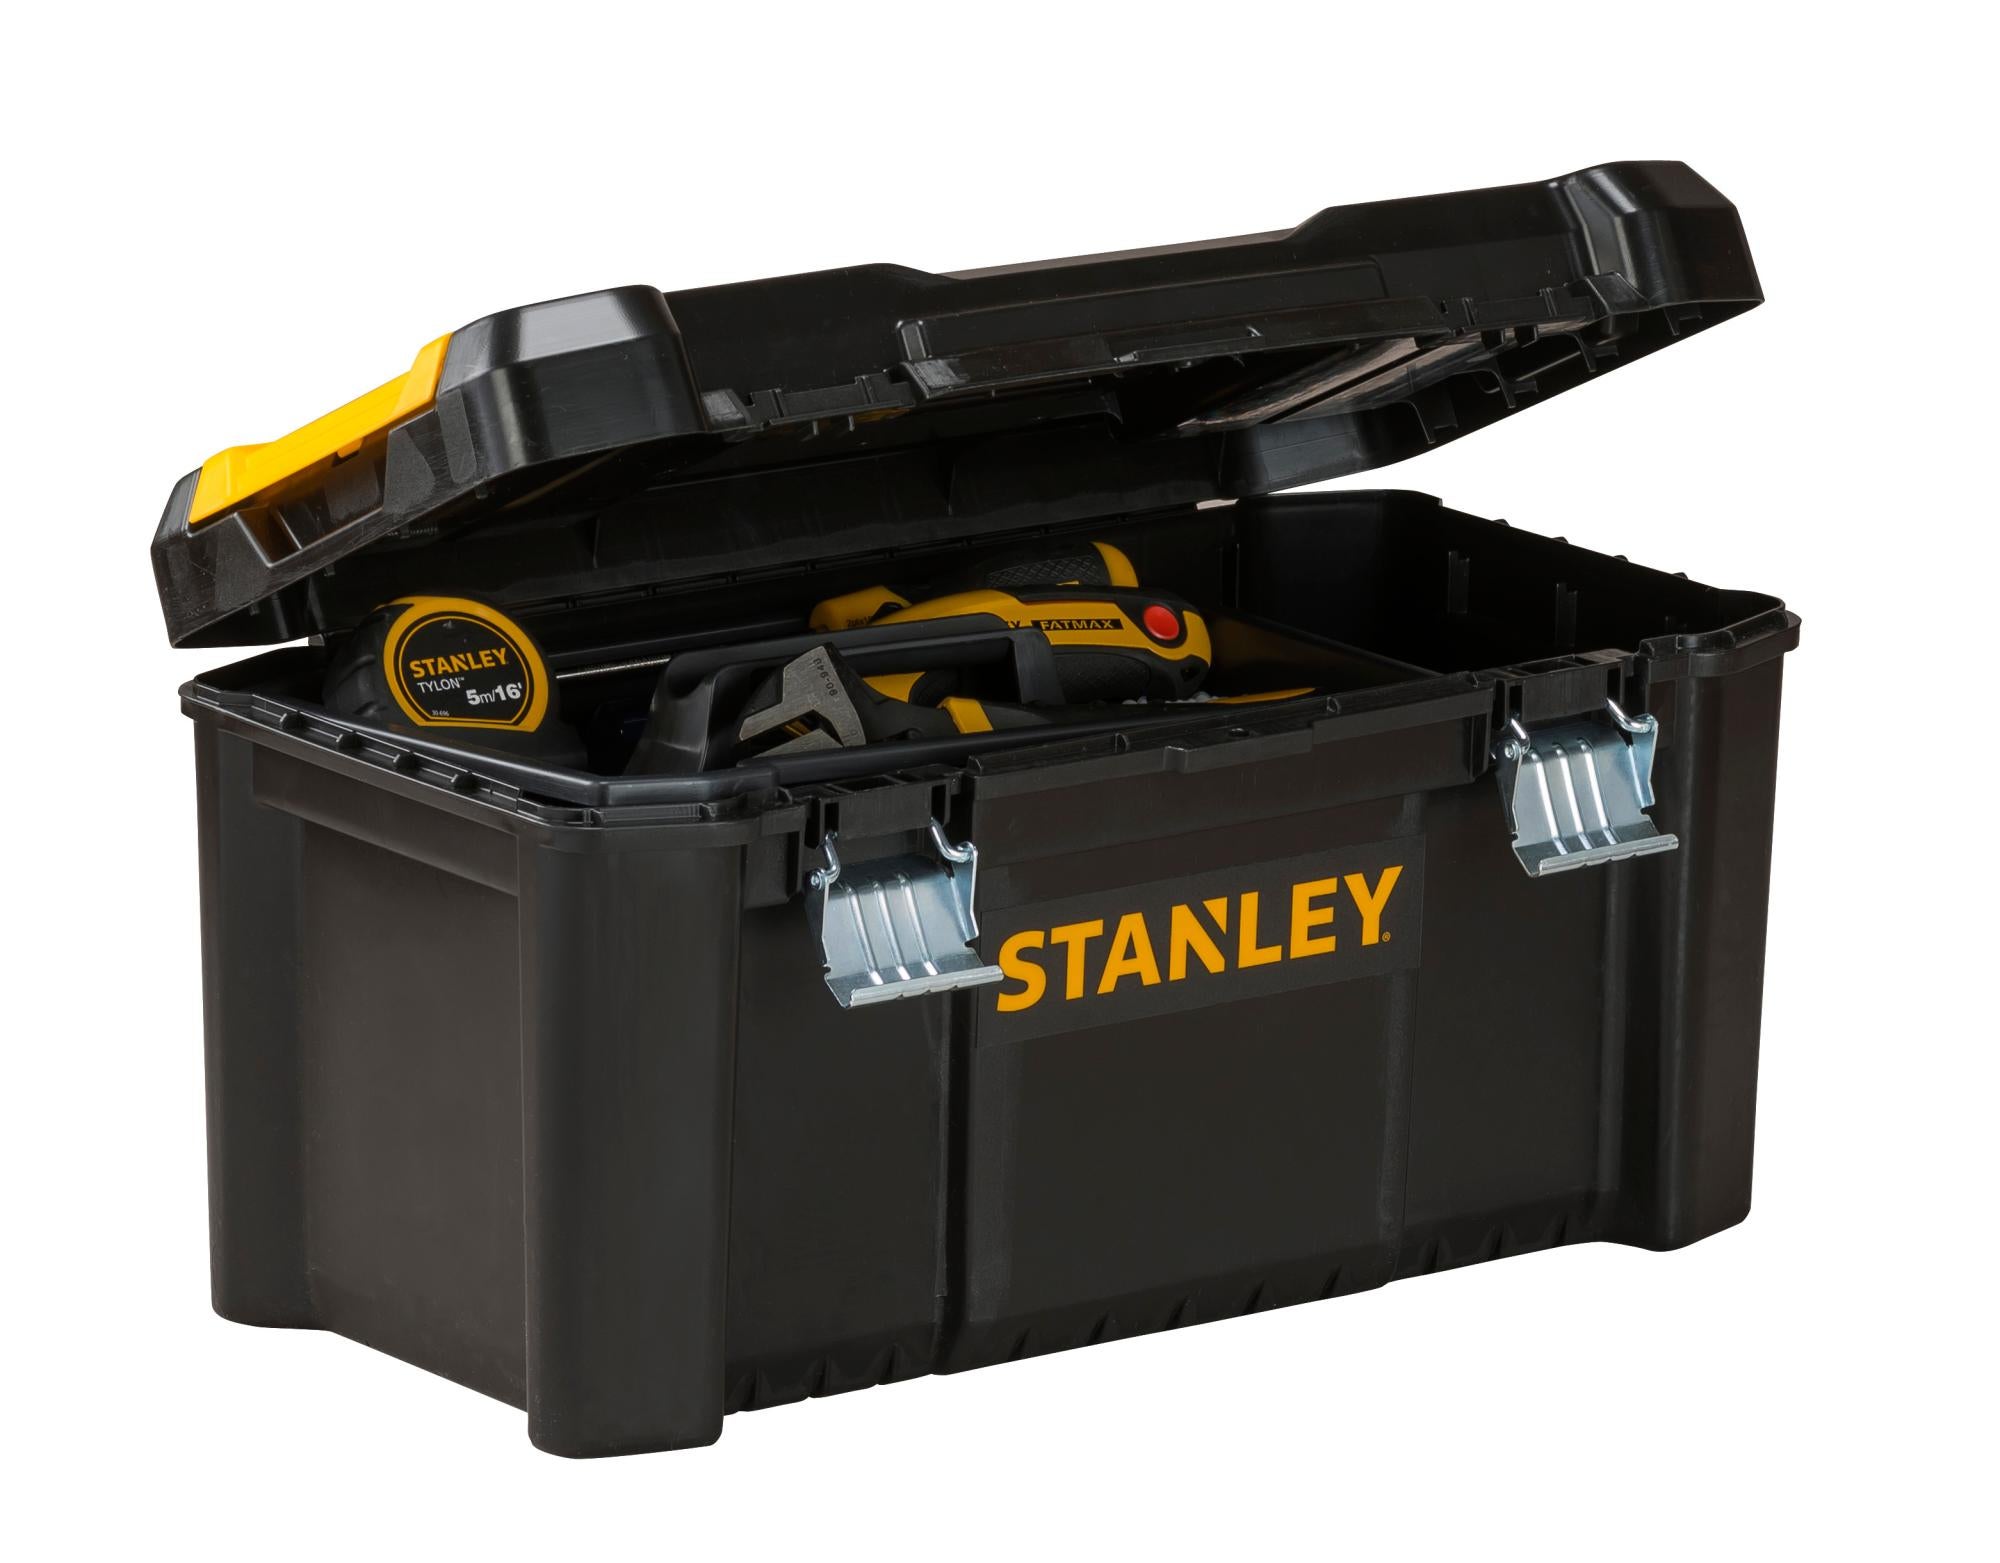 Boîte à outils cantilever STST83397-1 STANLEY, L.48.0 cm, noir / jaune